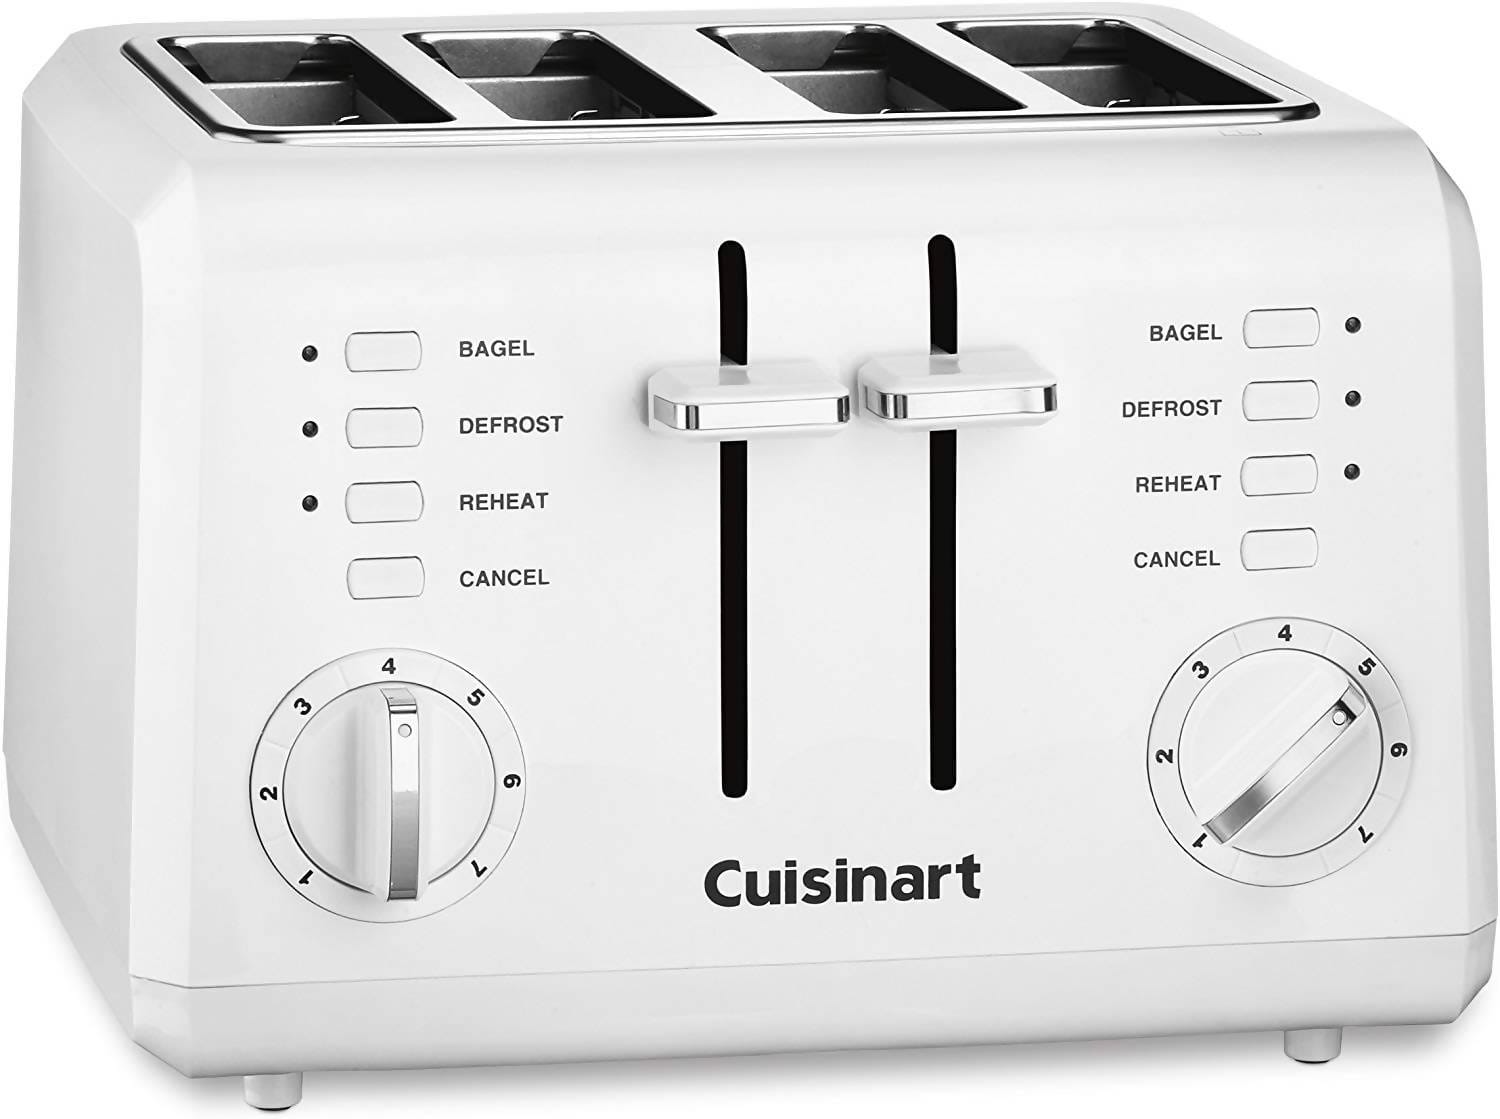 Cuisinart 4-Slice Toaster - Black - CPT-142BK